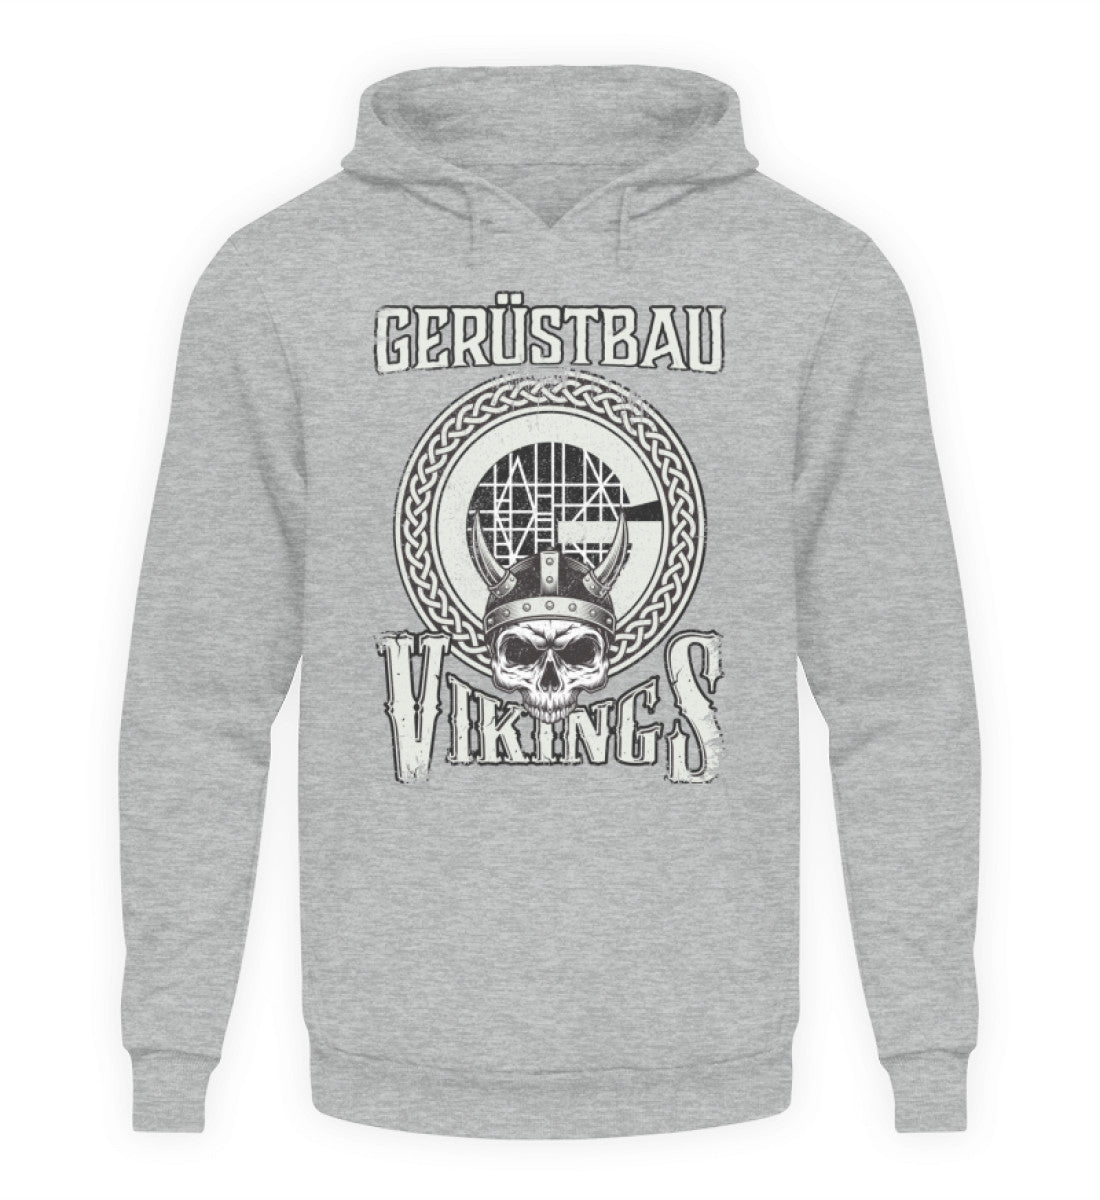 Gerüstbau Vikings - Hoodie €34.95 Gerüstbauer - Shop >>